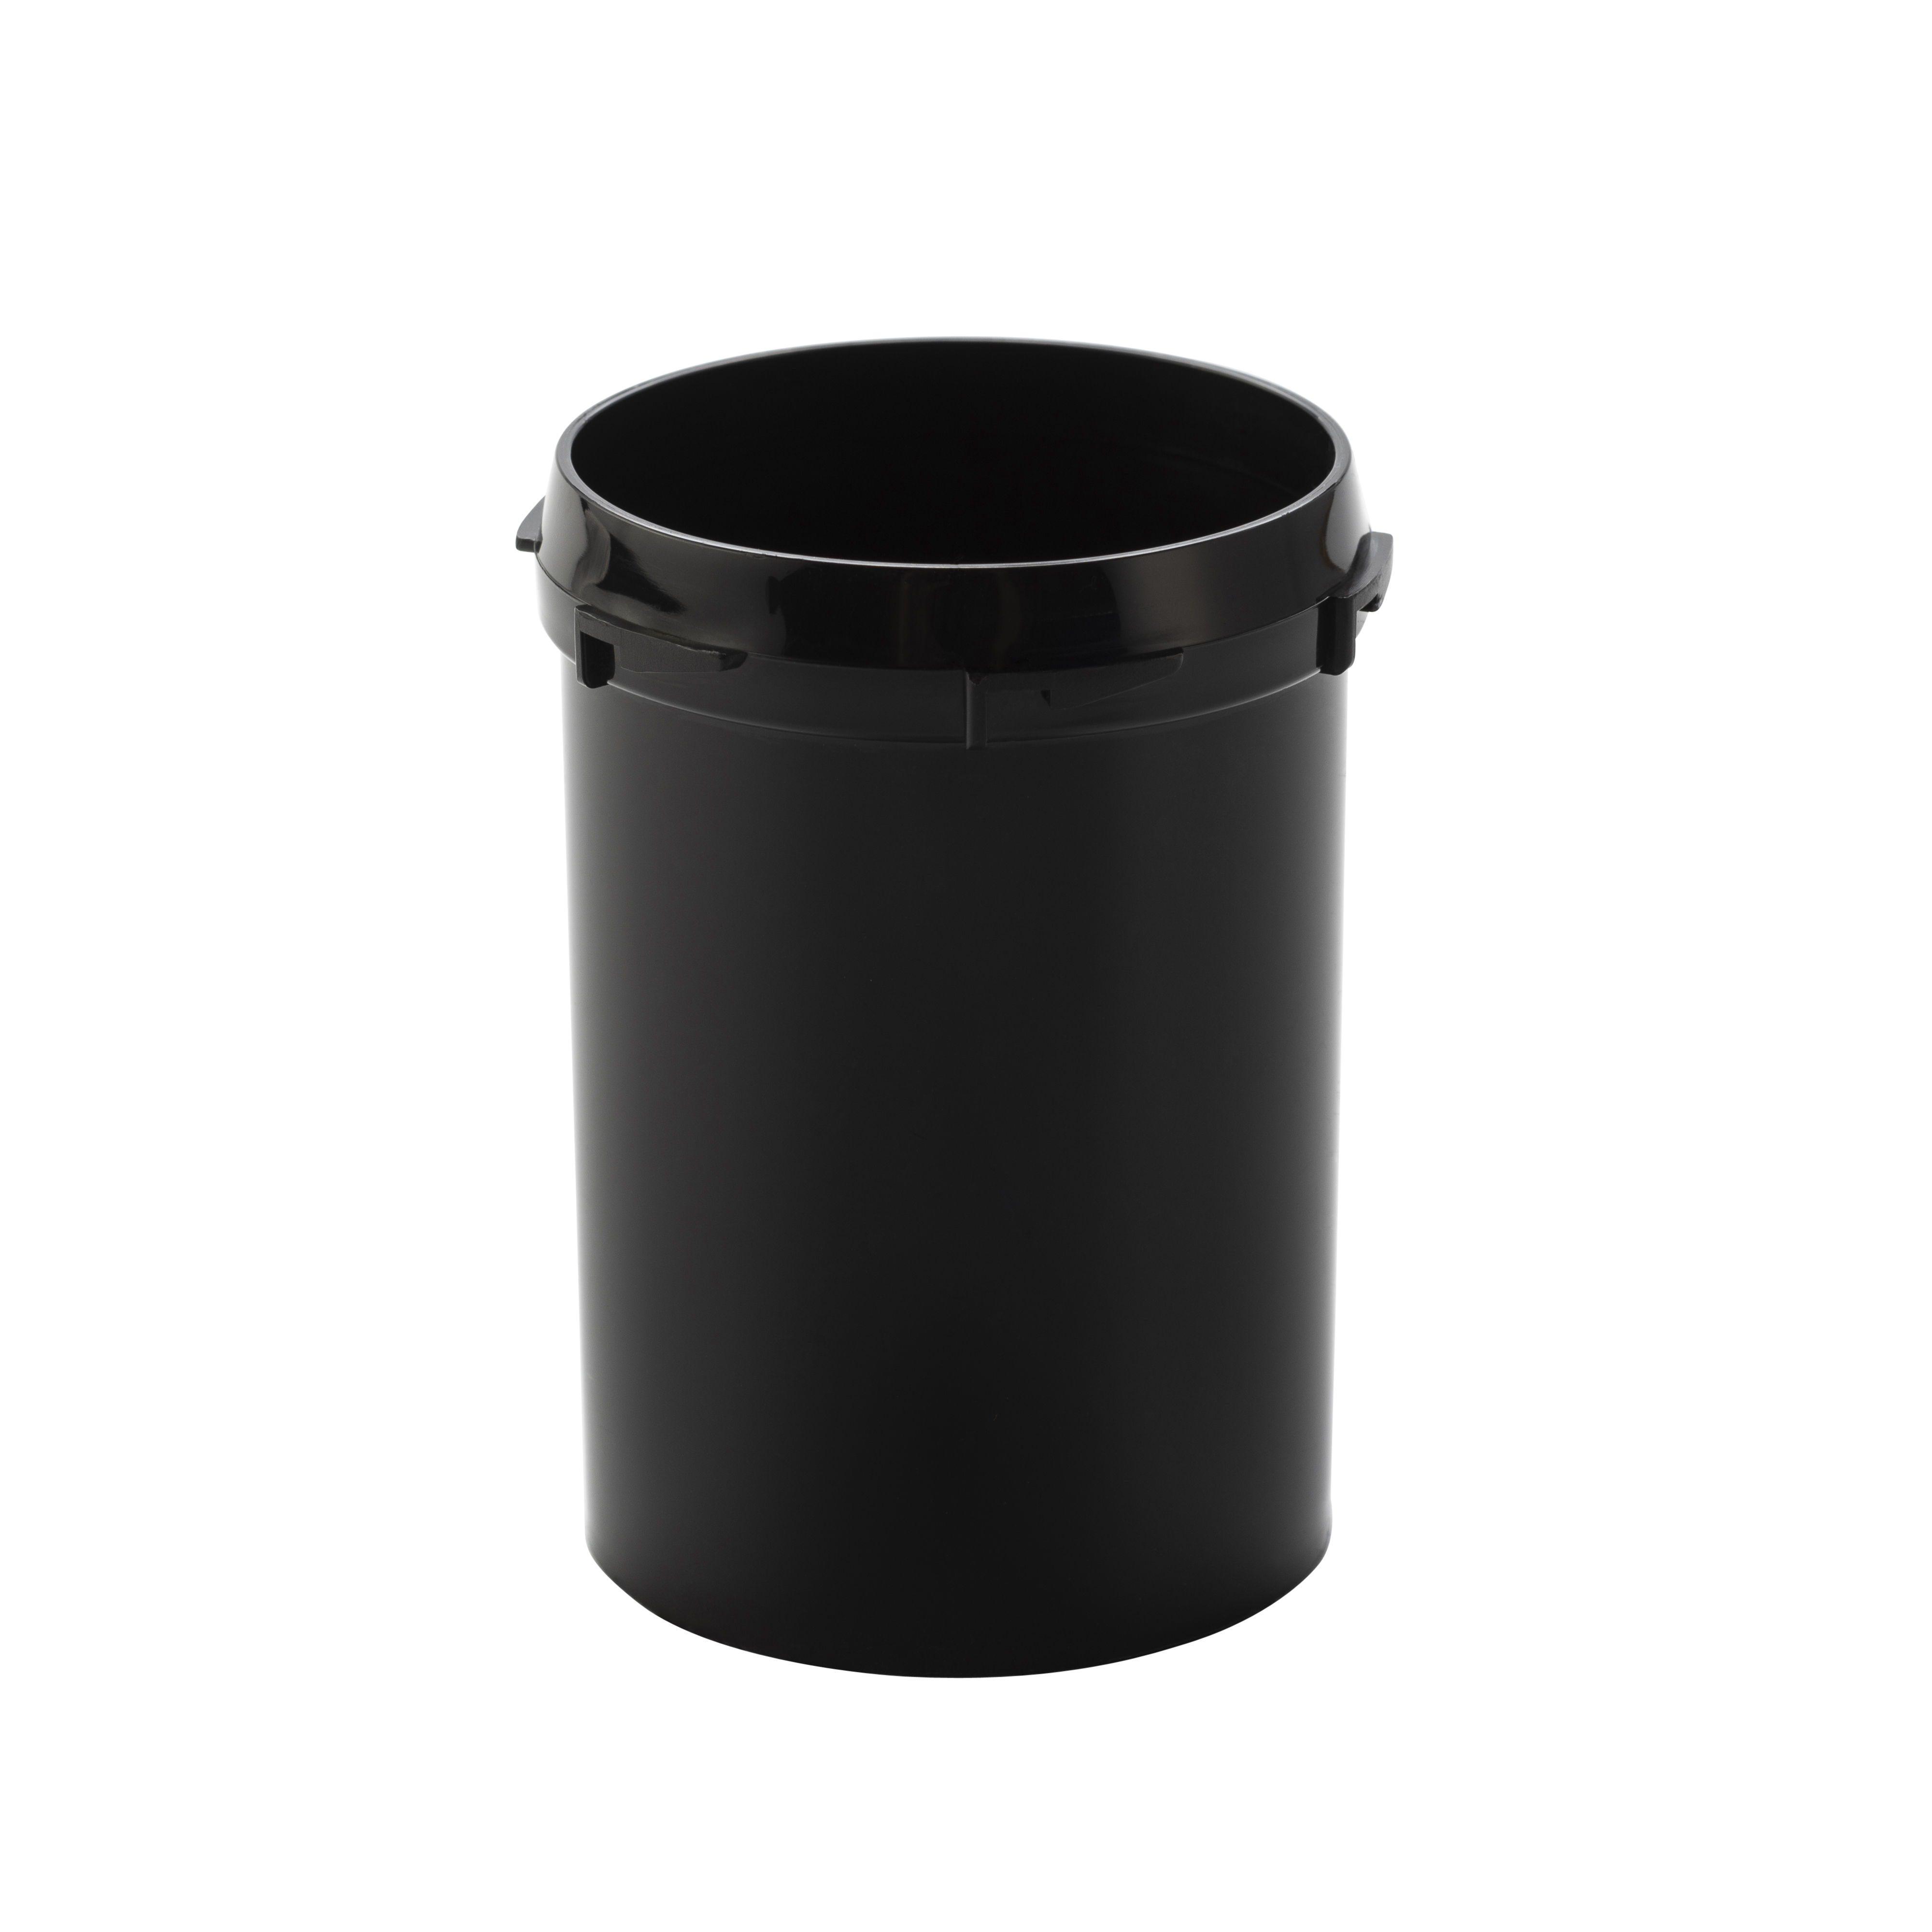 Film container in black